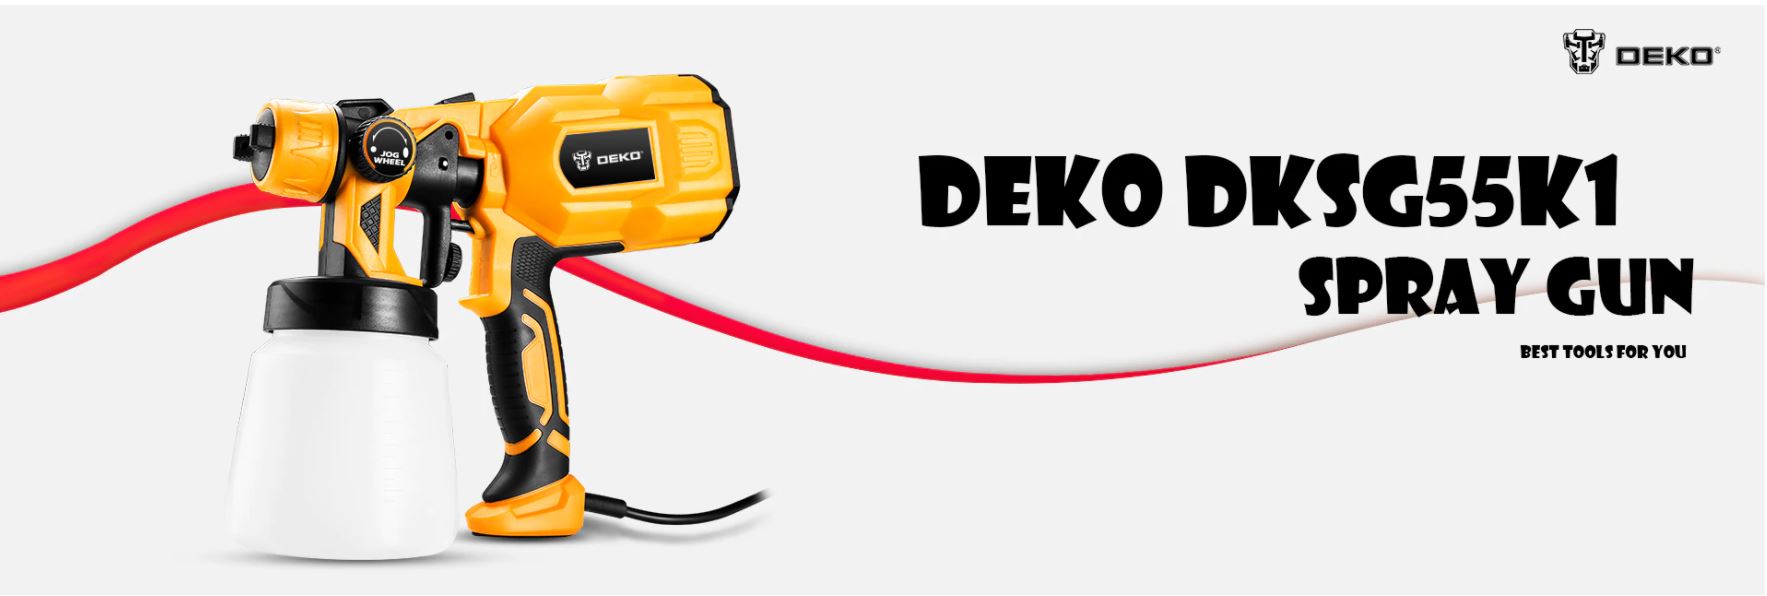 Najlepsze narzędzia z Aliexpress - promocja produktów marki DEKO - pistolet natryskowy DEKO DKSG55K1